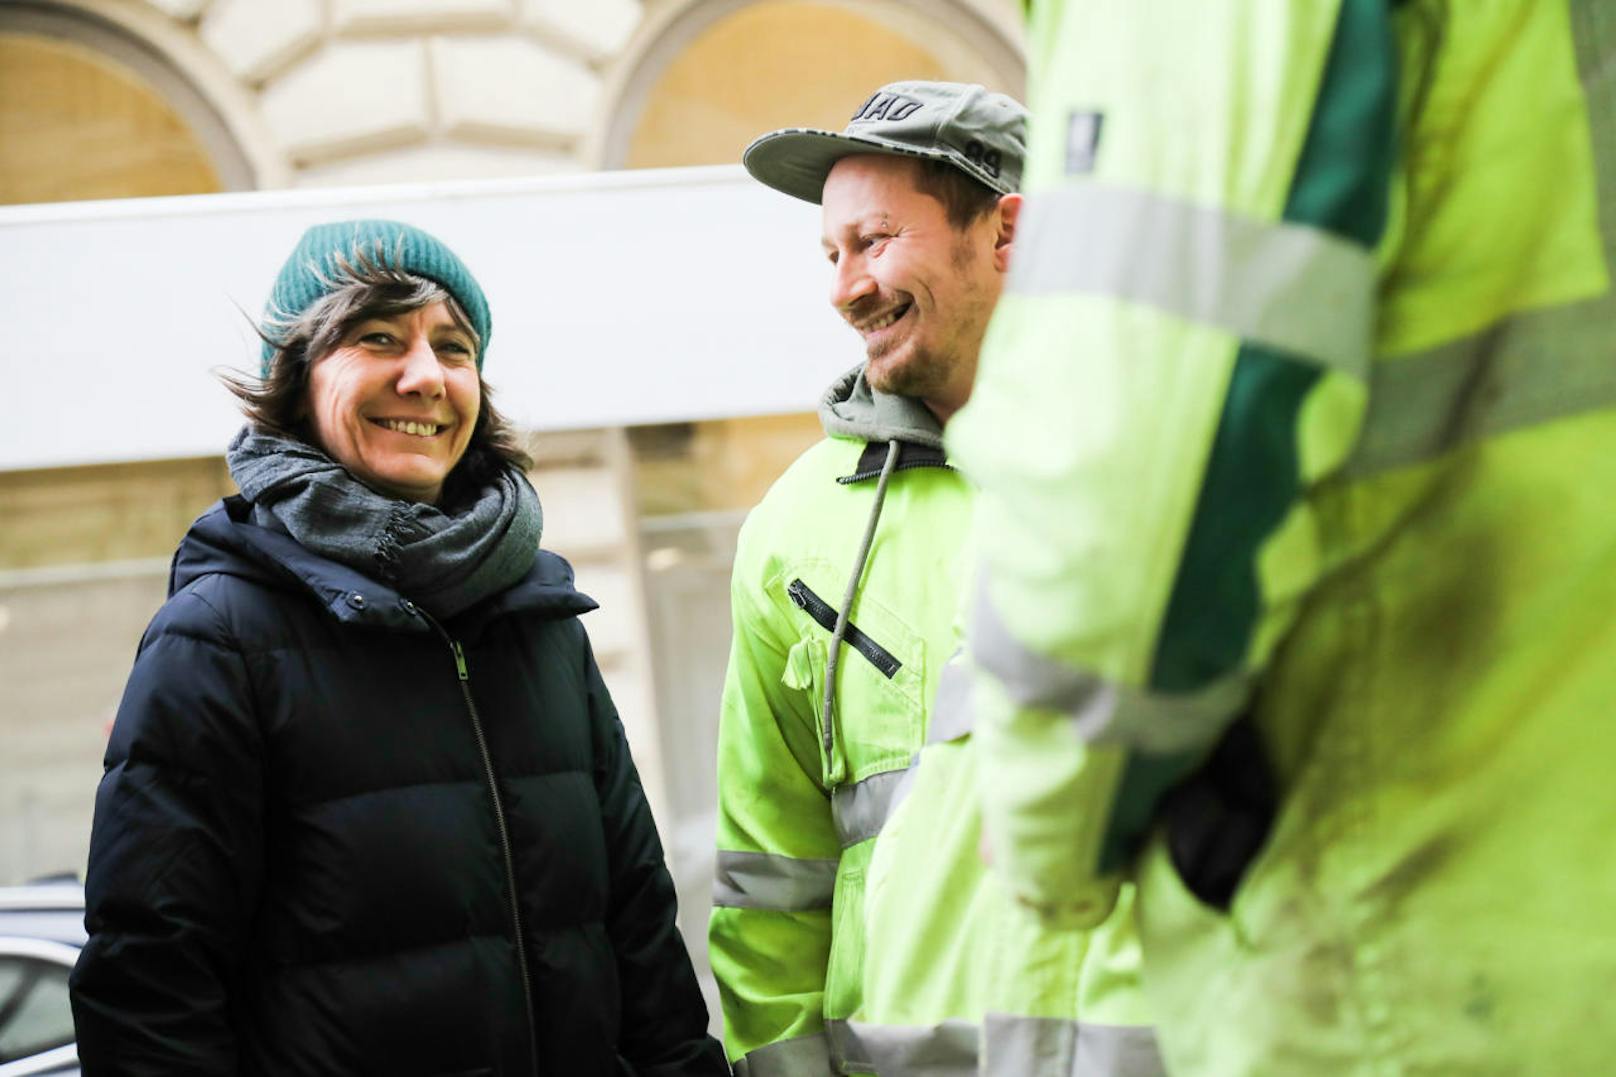 Verkehrsstadträtin Birgit Hebein (Grüne) beim "Anradeln" des neuen Radwegs auf der Linken Wienzeile. Die Bauarbeiten sind zwei Wochen früher - nämlich schon am 29. November - fertig. Hebein bedankte sich dafür am Mittwoch bei den Arbeitern mit Kaffee und Kipferl.